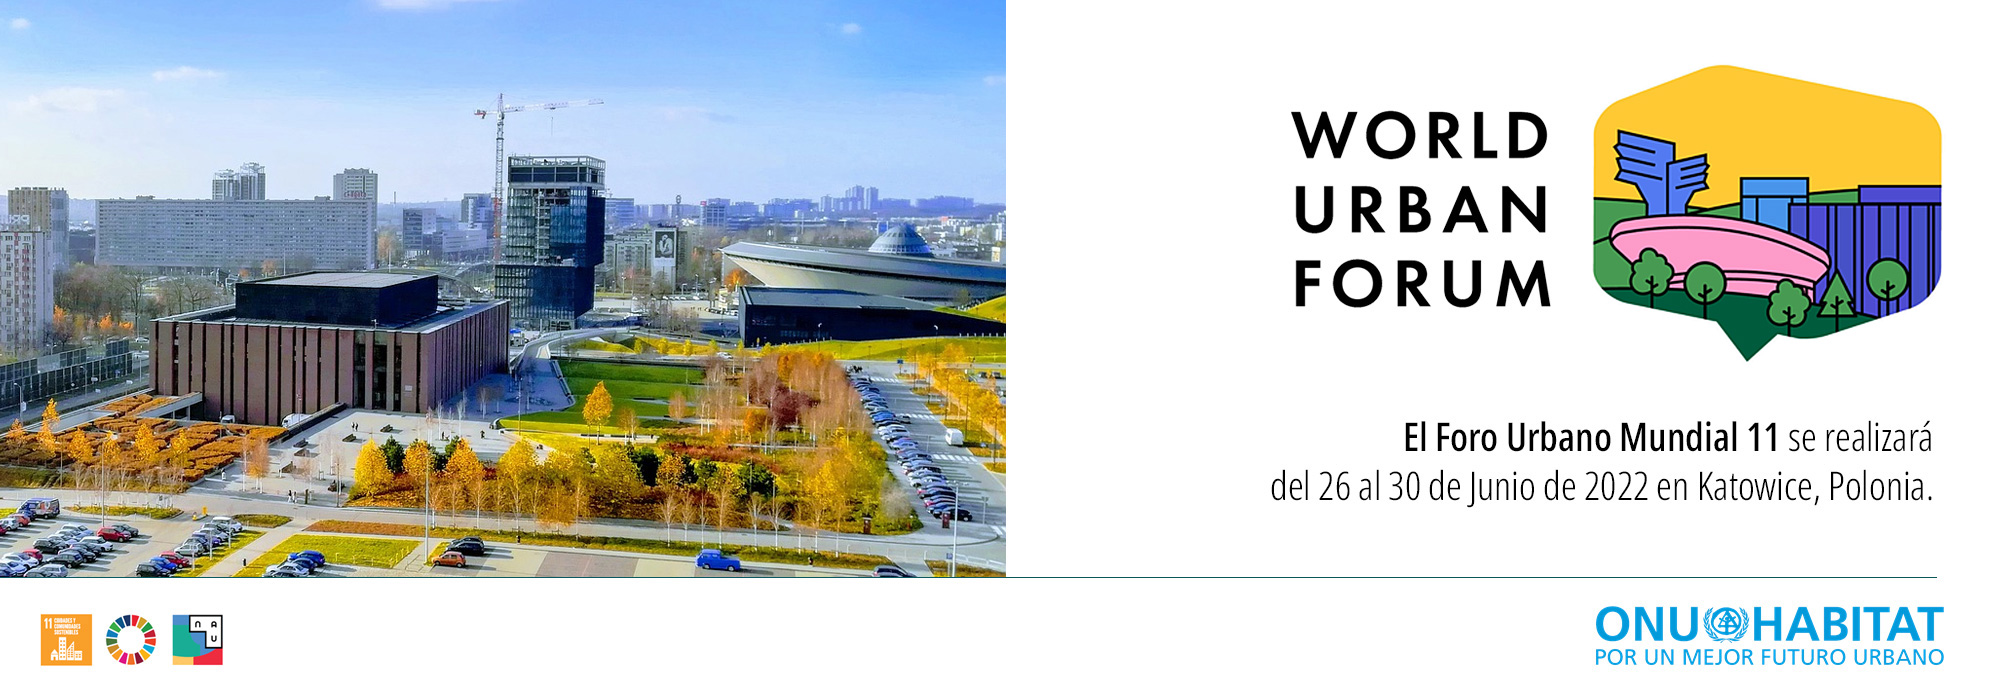 XI Foro Urbano Mundial, WUF11